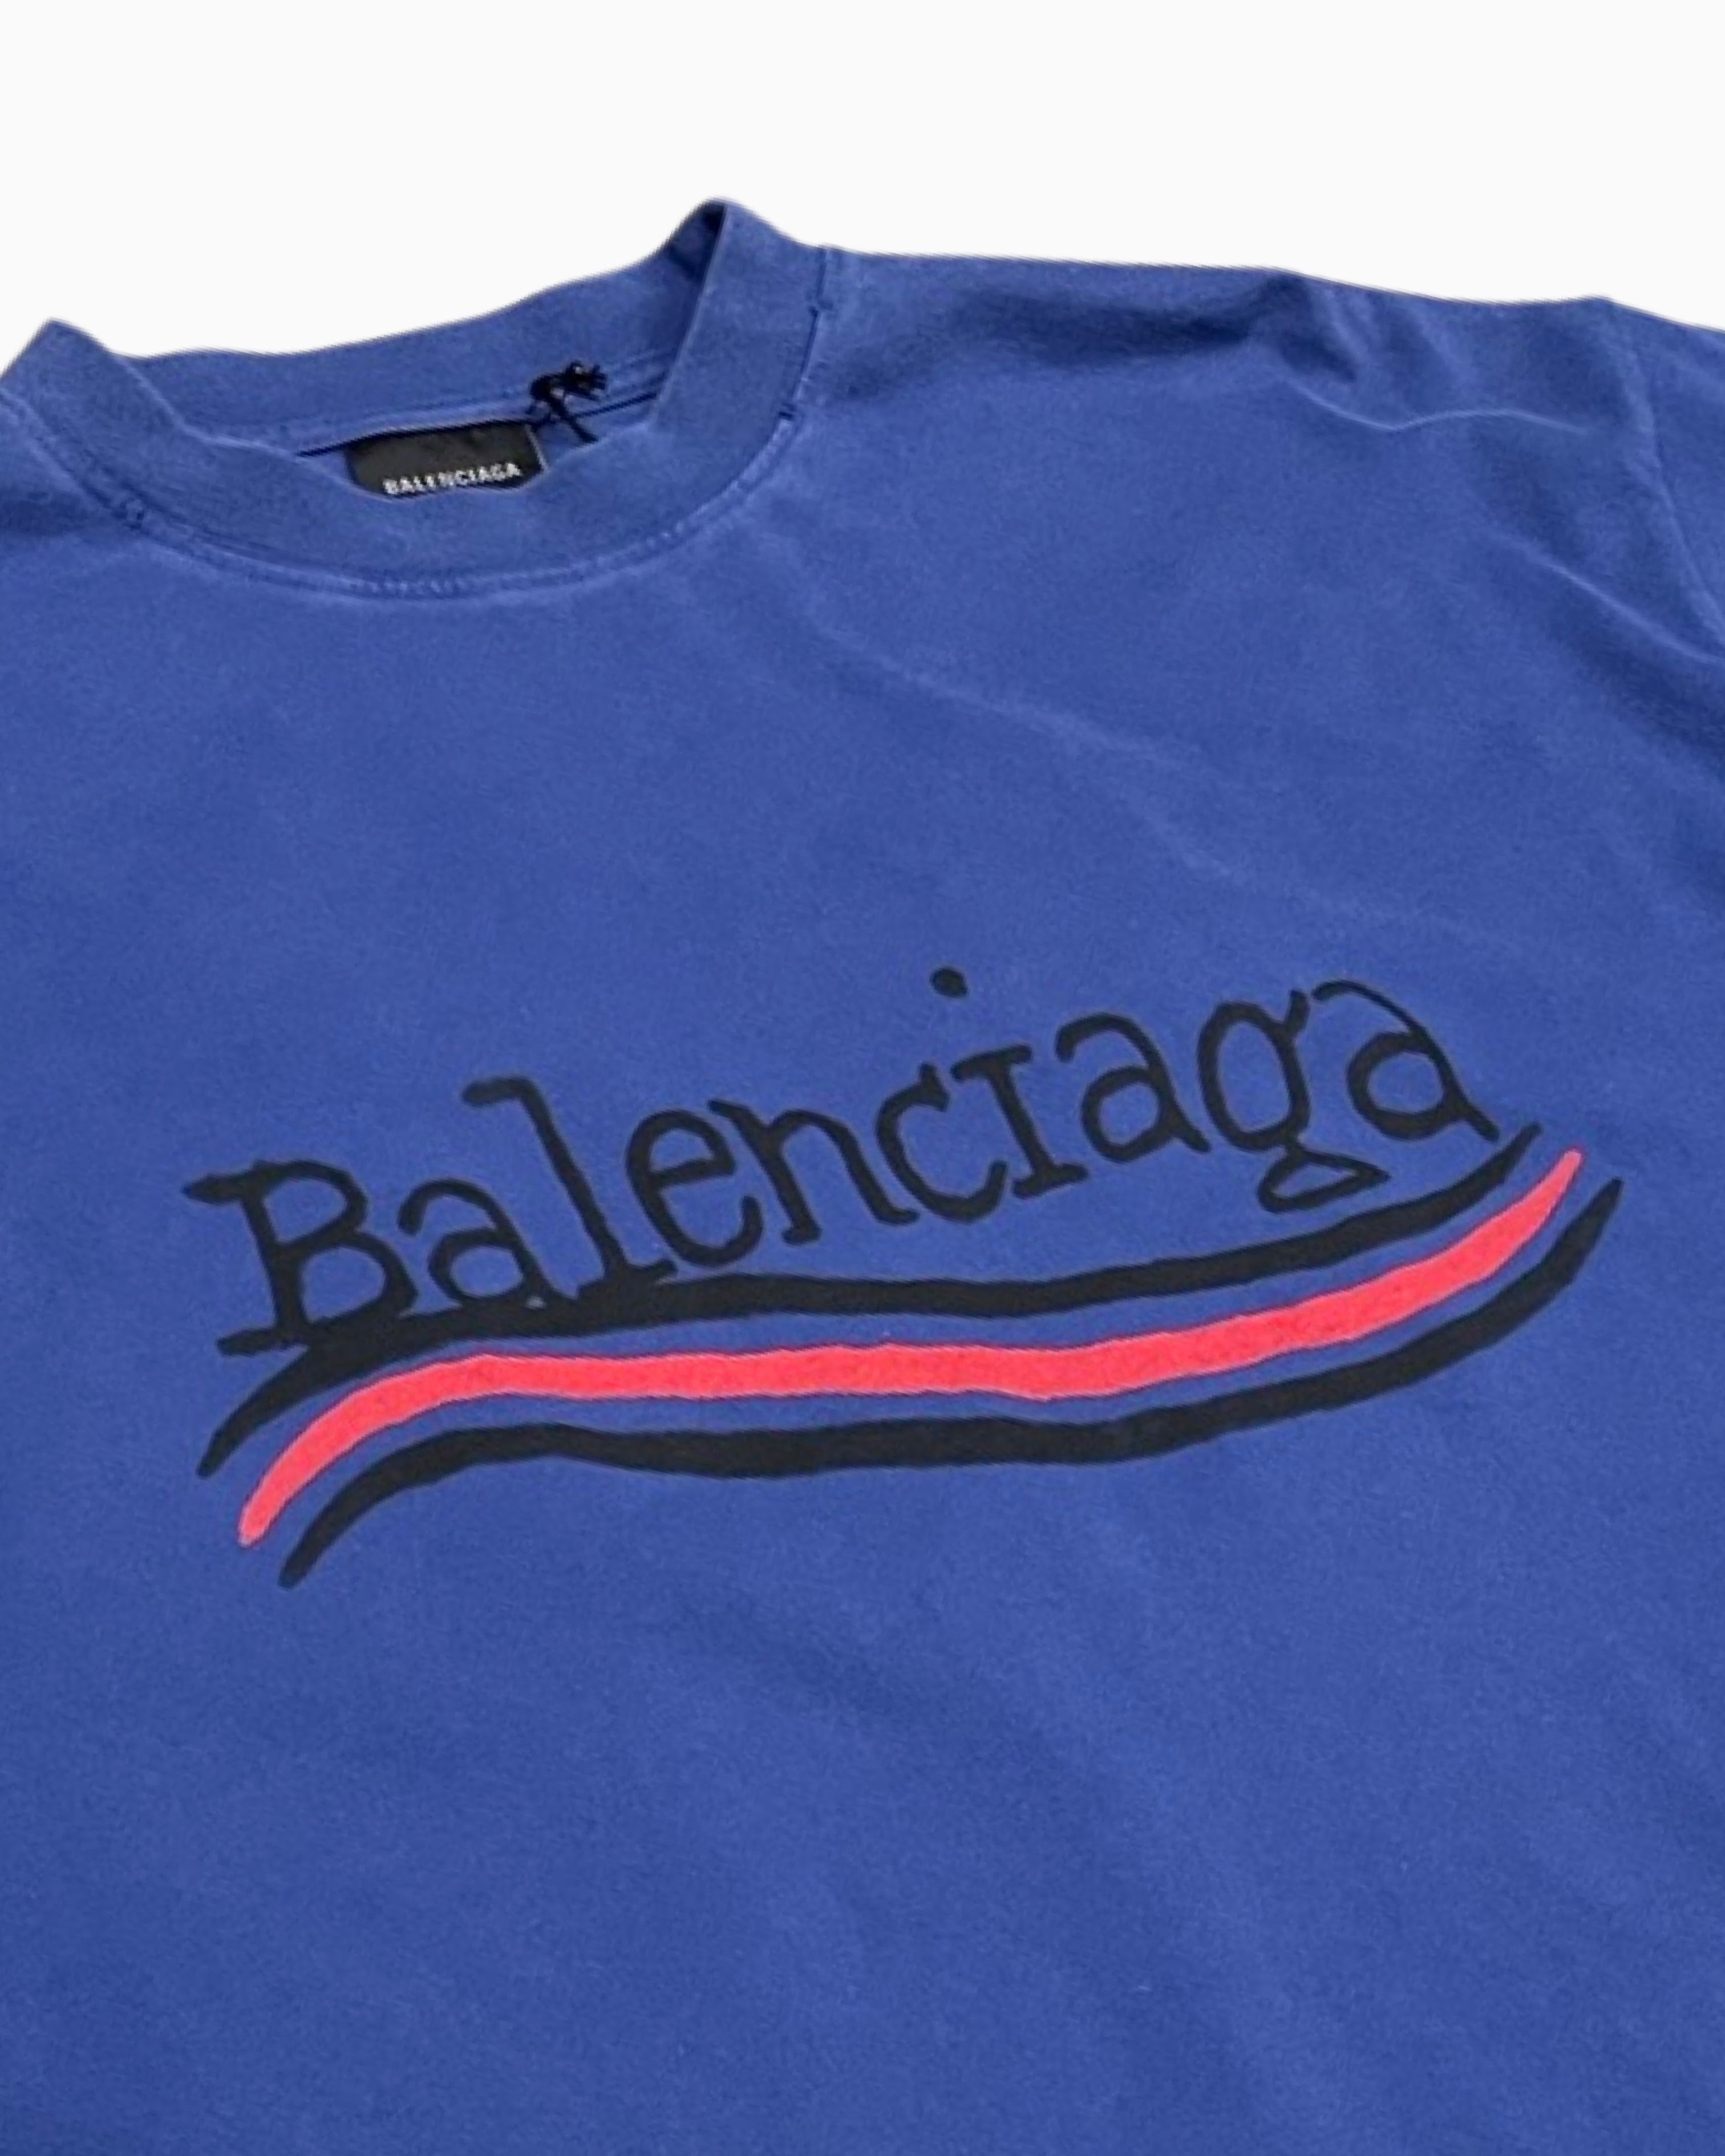 Balenciaga Hand Drawn Political Campaign Logo T-shirt – FUTURO